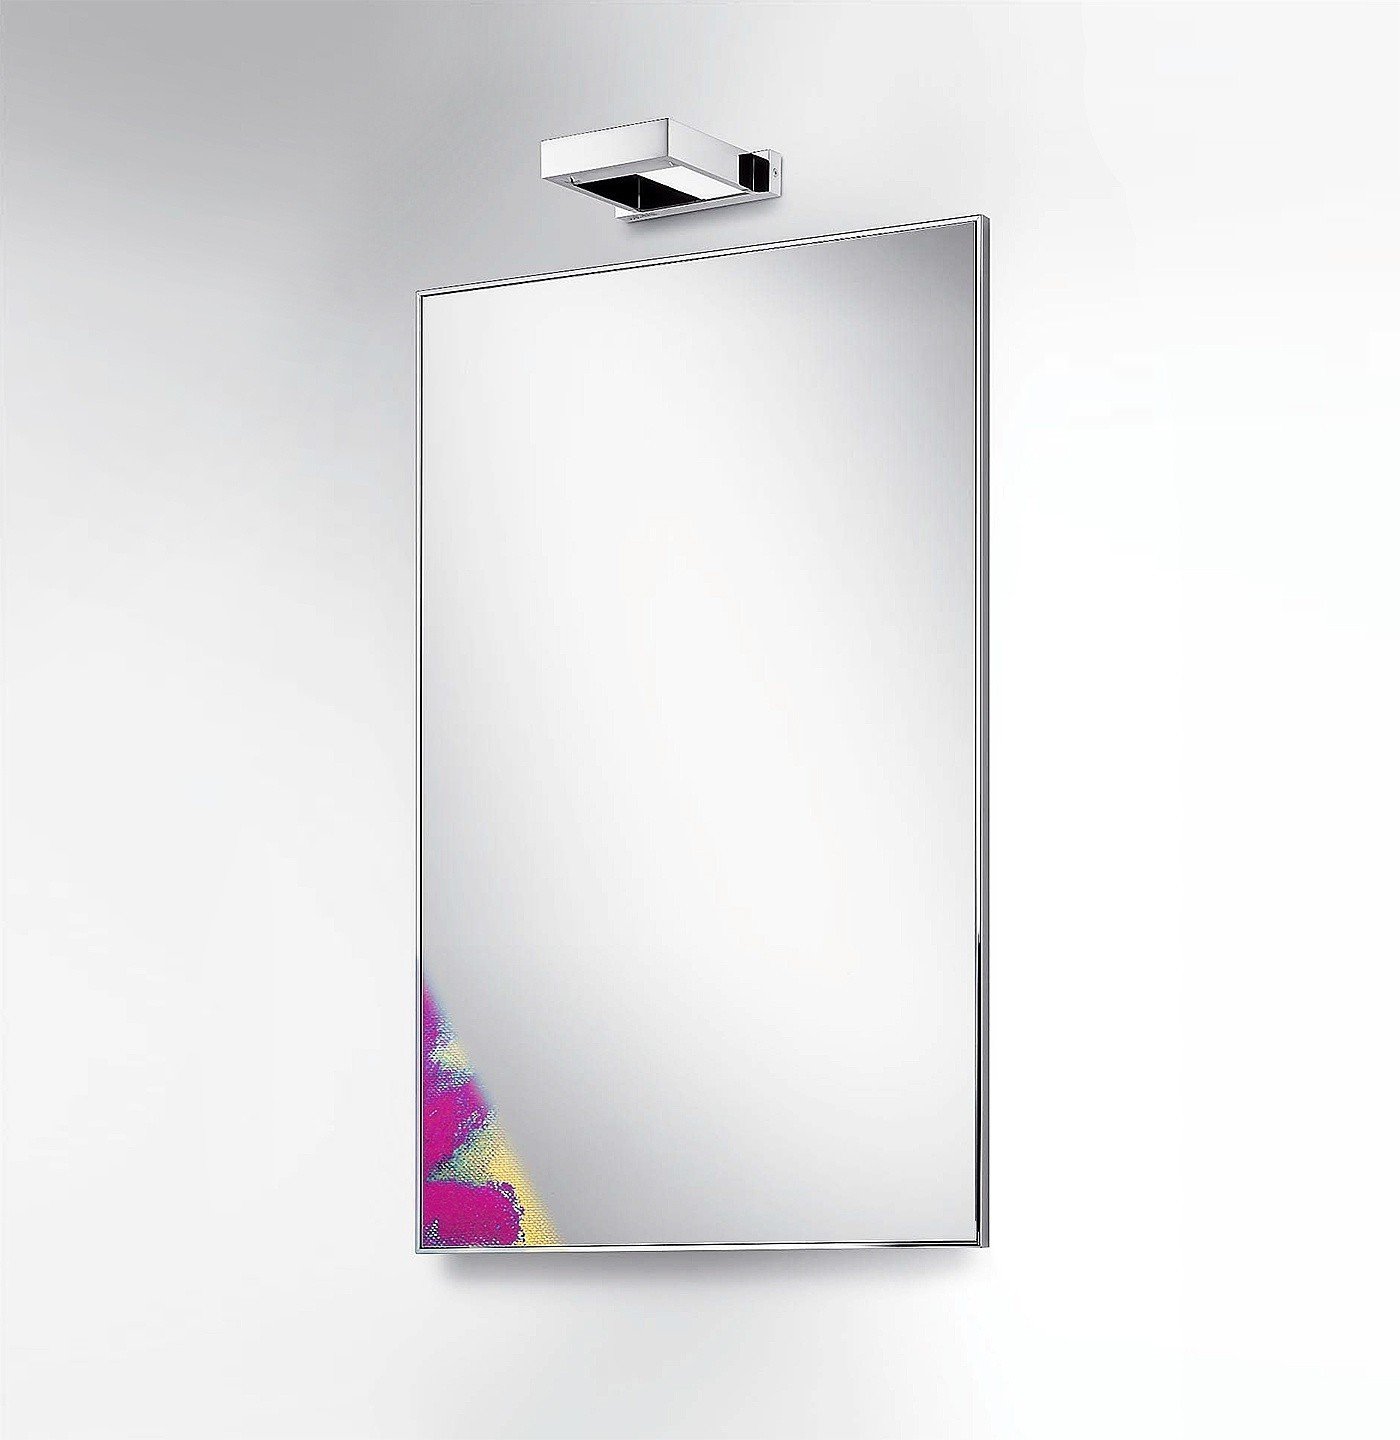 Colombo Design Gallery B2045 - Зеркало для ванной комнаты 100*60 см | в металлической раме (нержавеющая сталь - полированная)